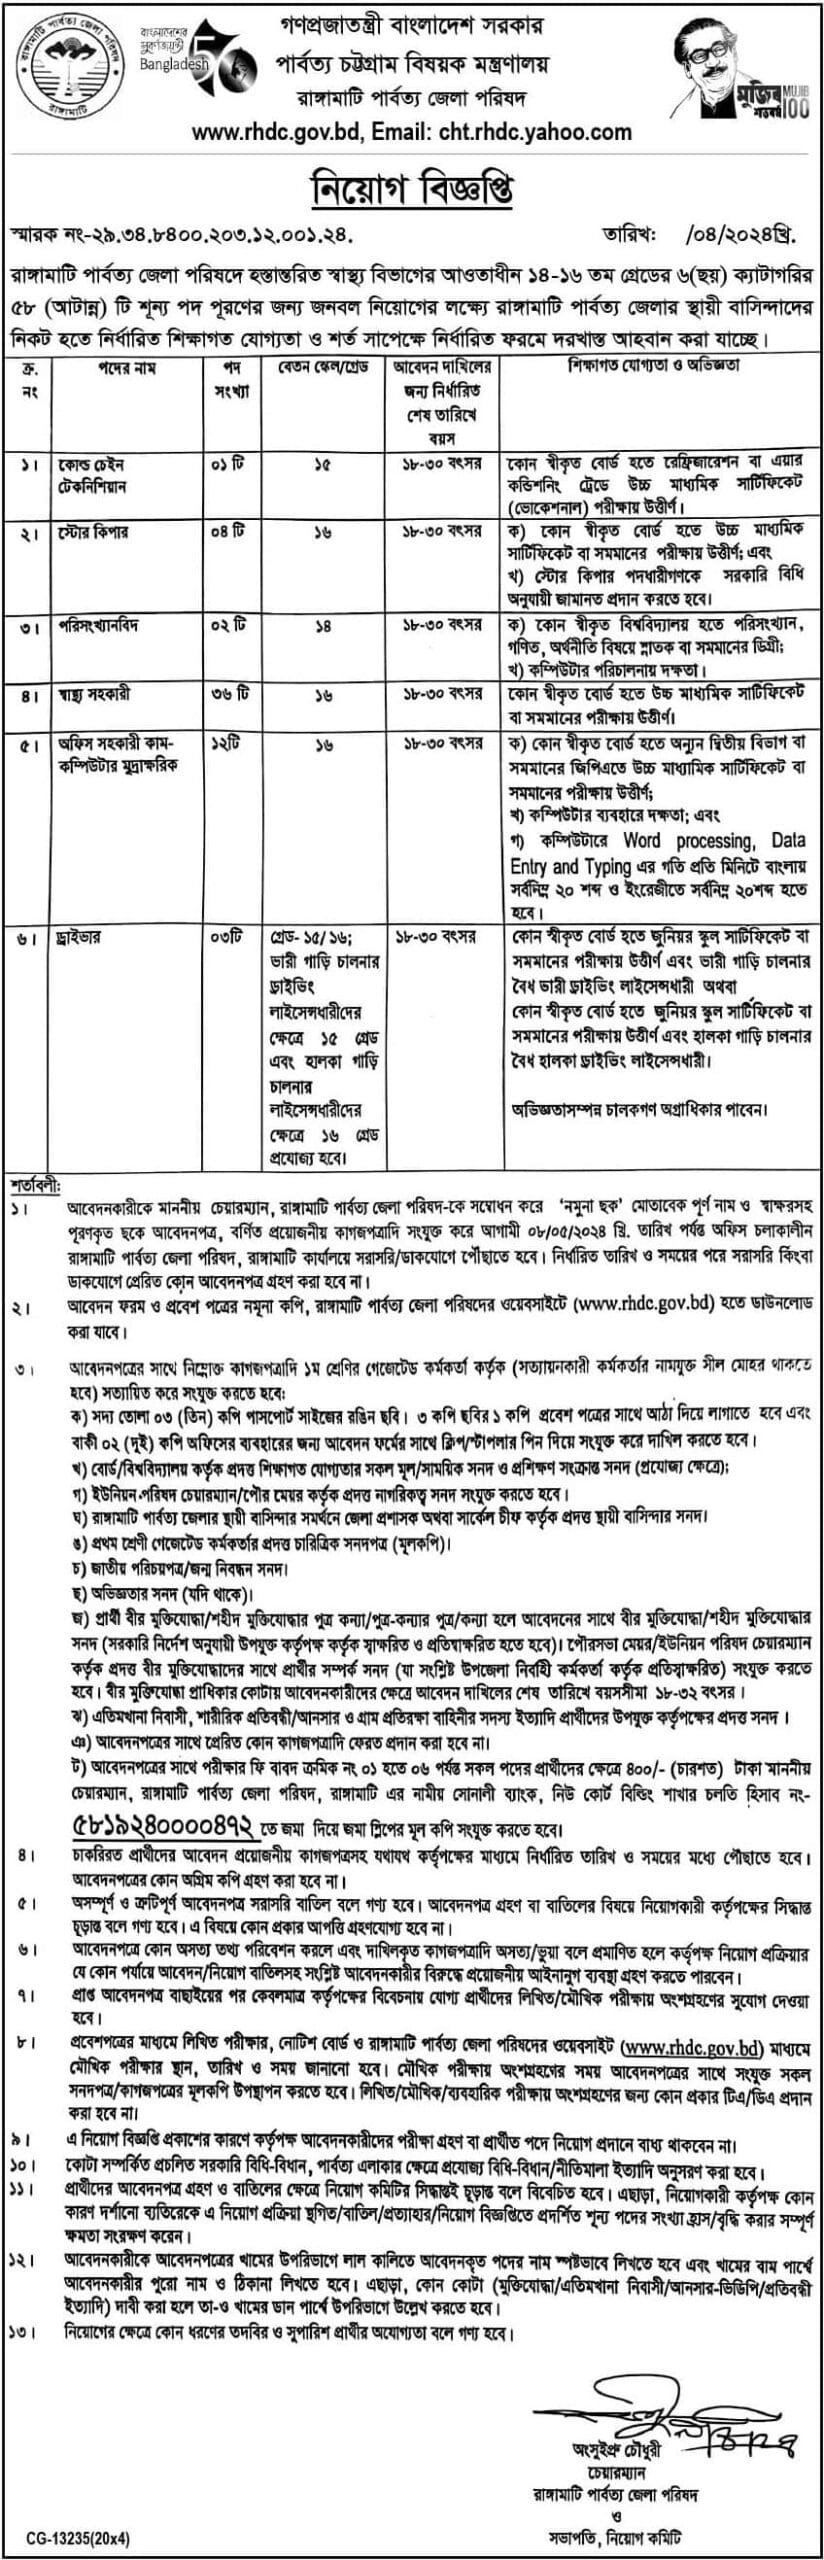 Rangamati Hill District Council Job Circular